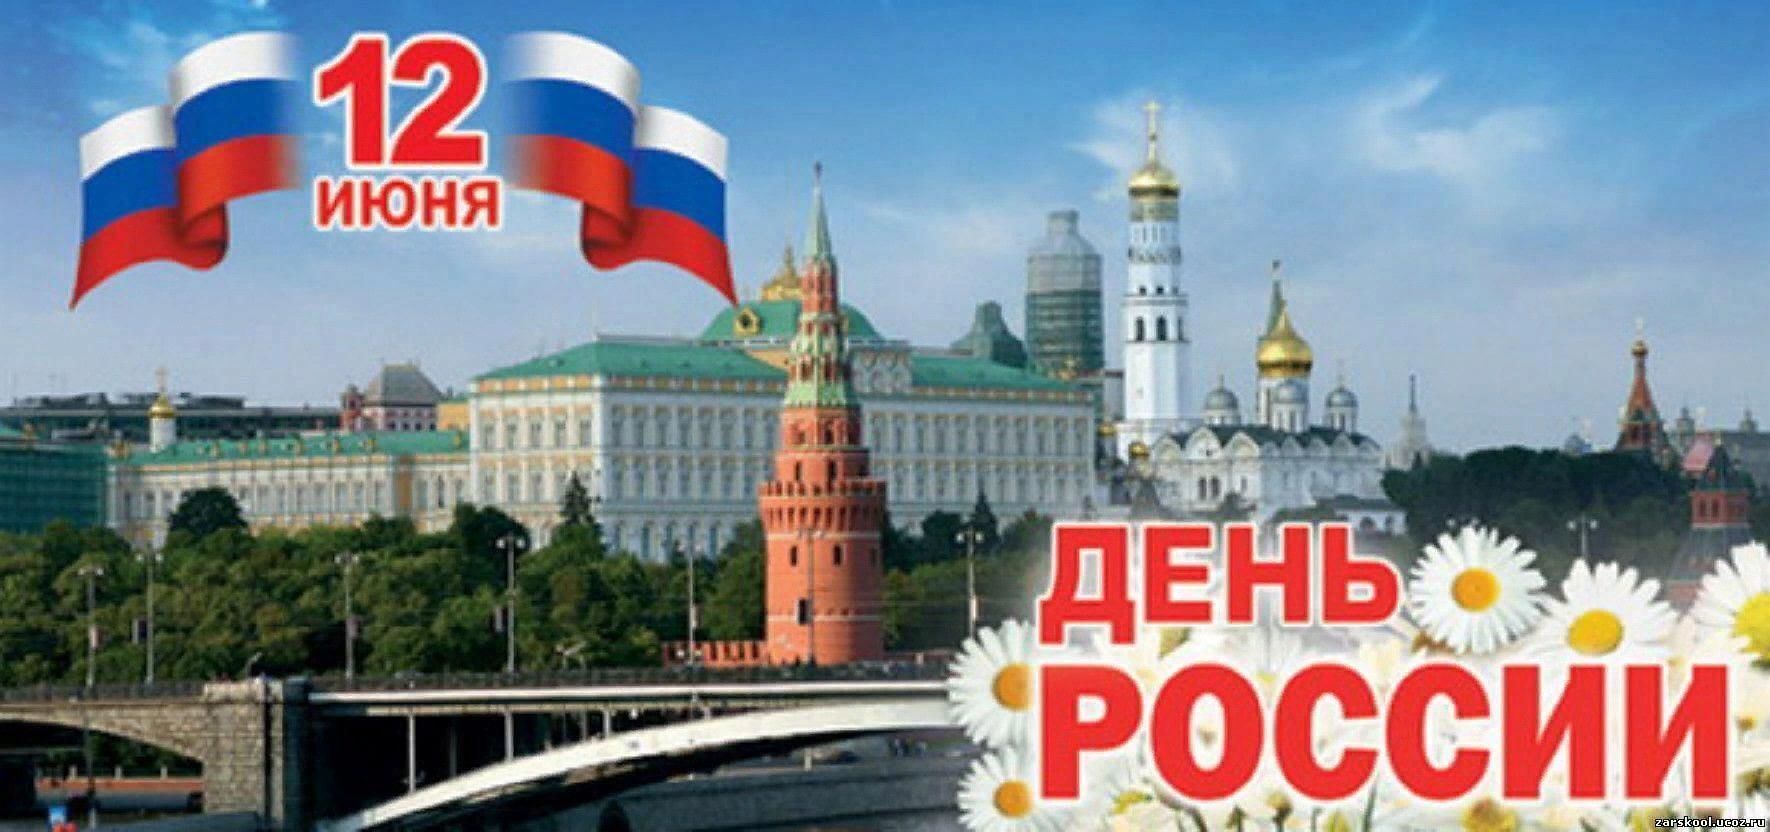 12 июня отпуск. С днём России 12 июня. С днем России поздравления. День независимости России. День России плакат.